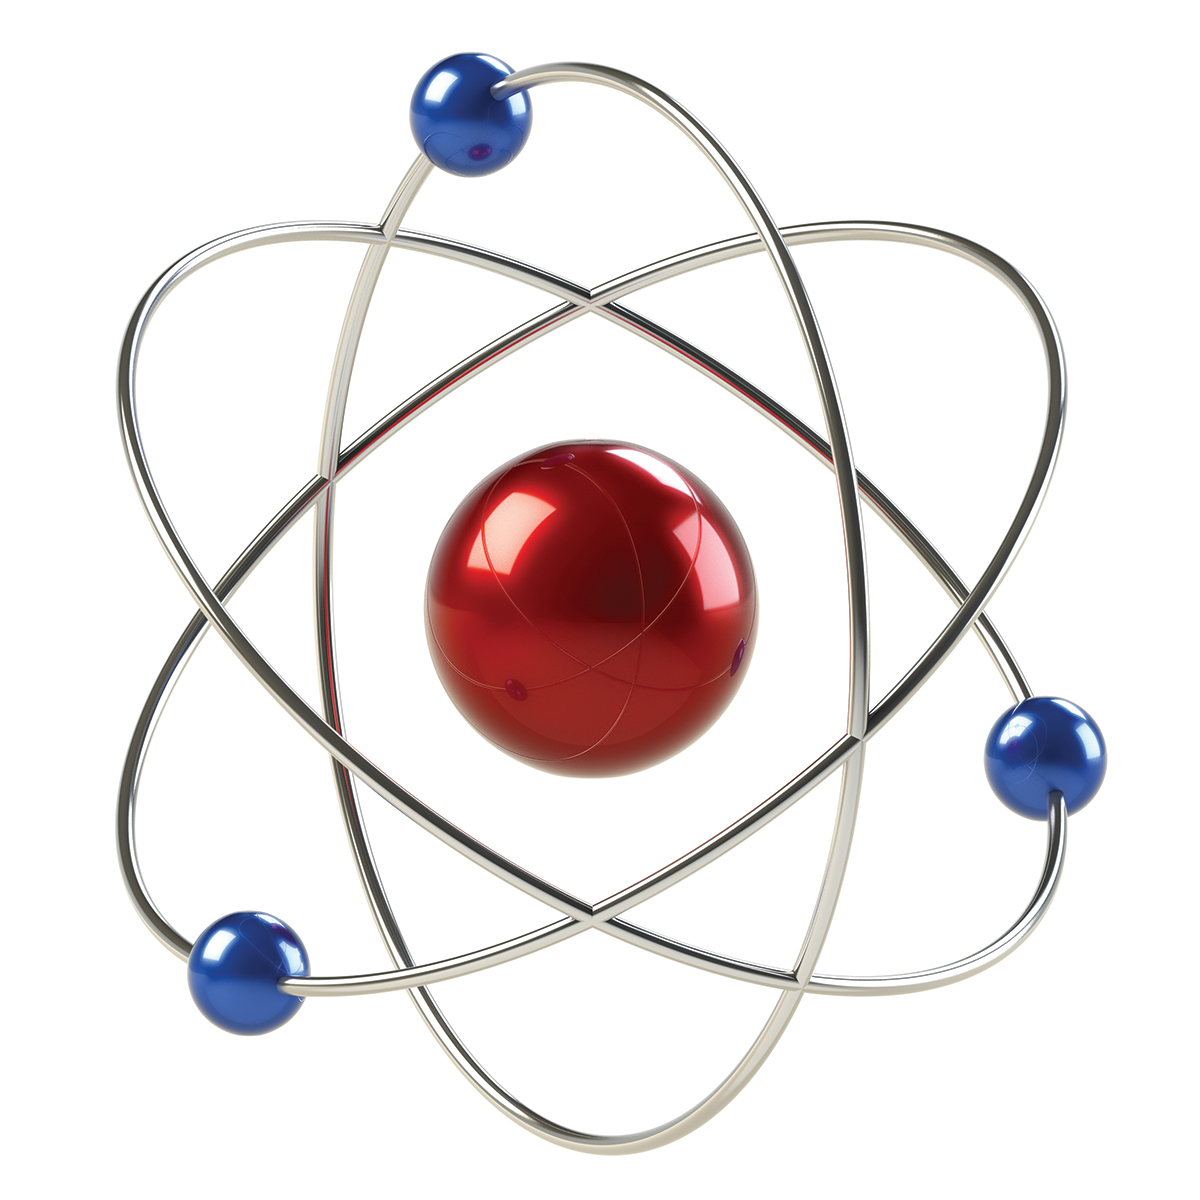 Orbital model of an atom